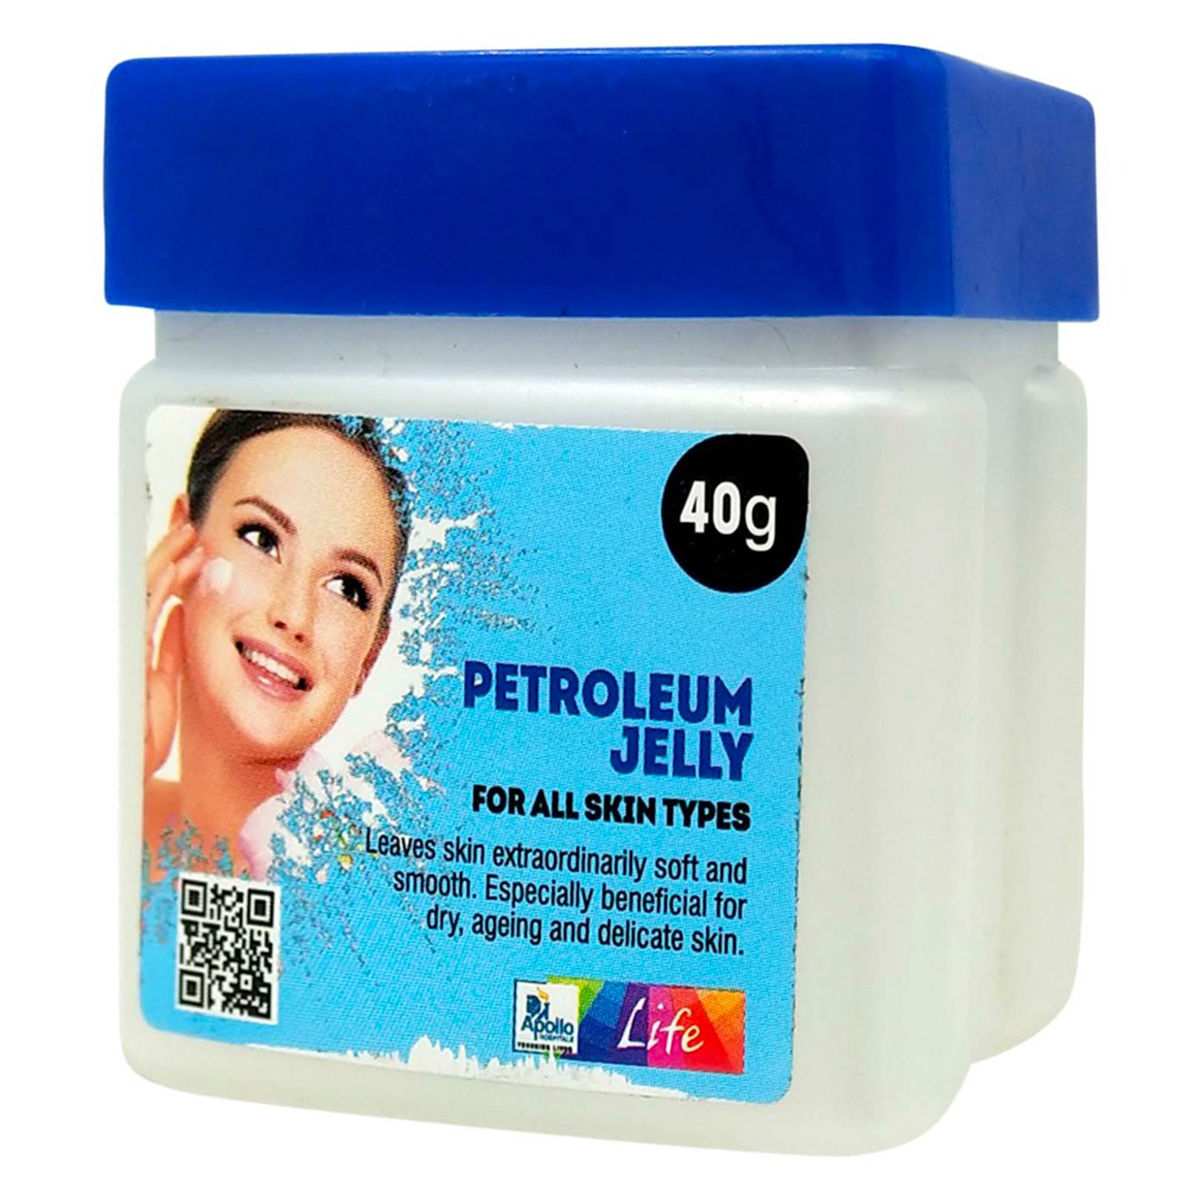 Buy Apollo Life Petroleum Jelly, 40 gm Online